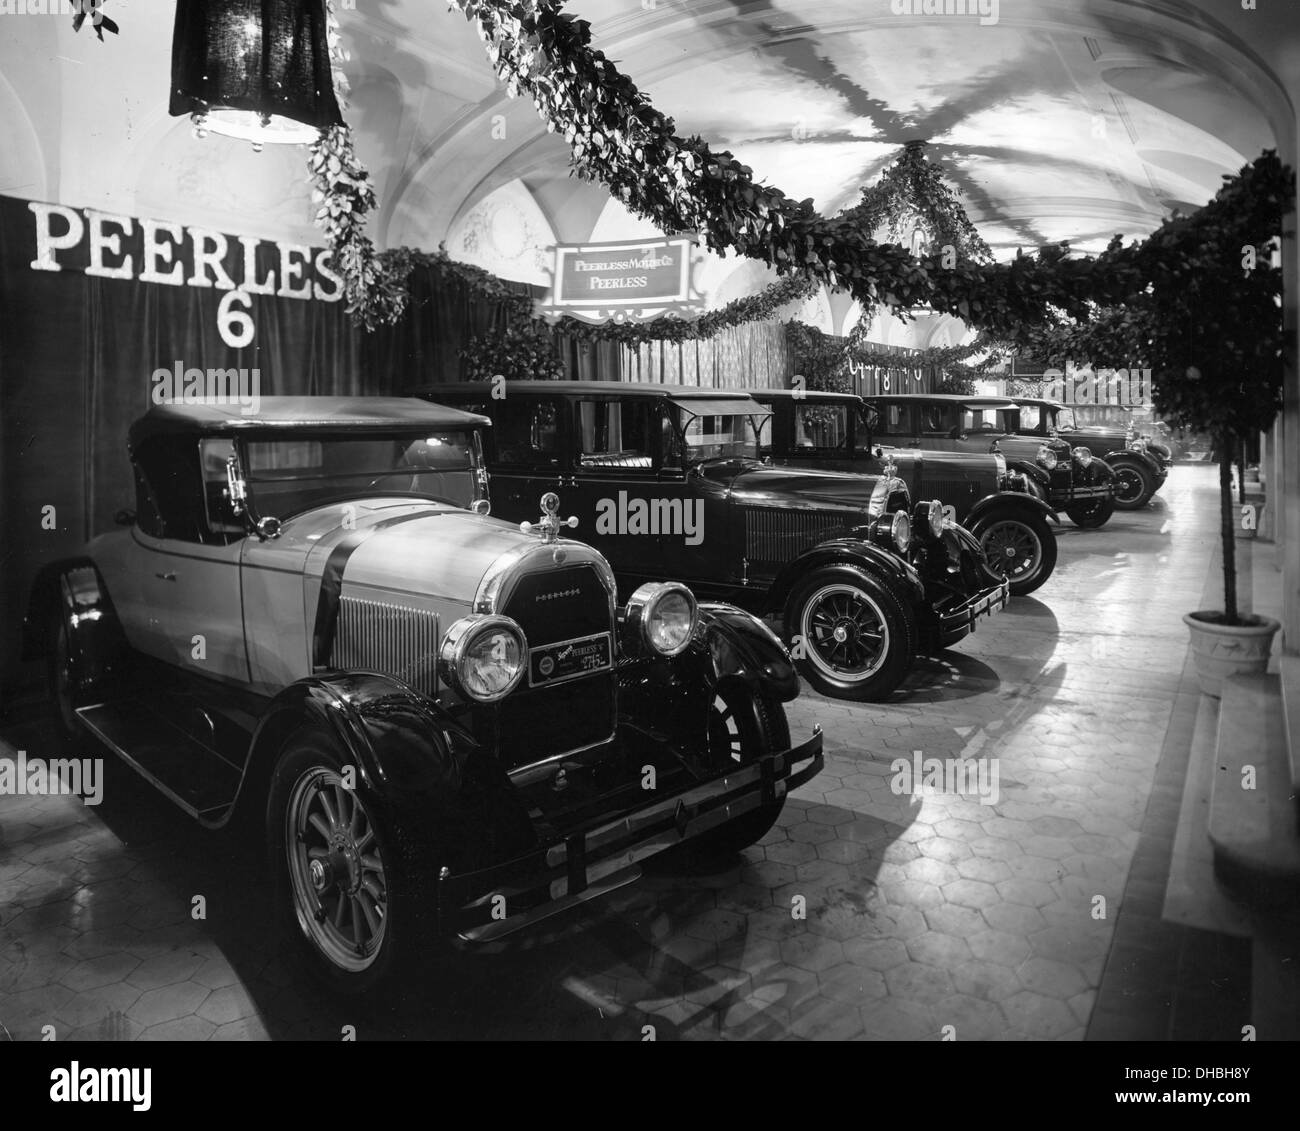 Affichage à Peerless car show 1926 Banque D'Images